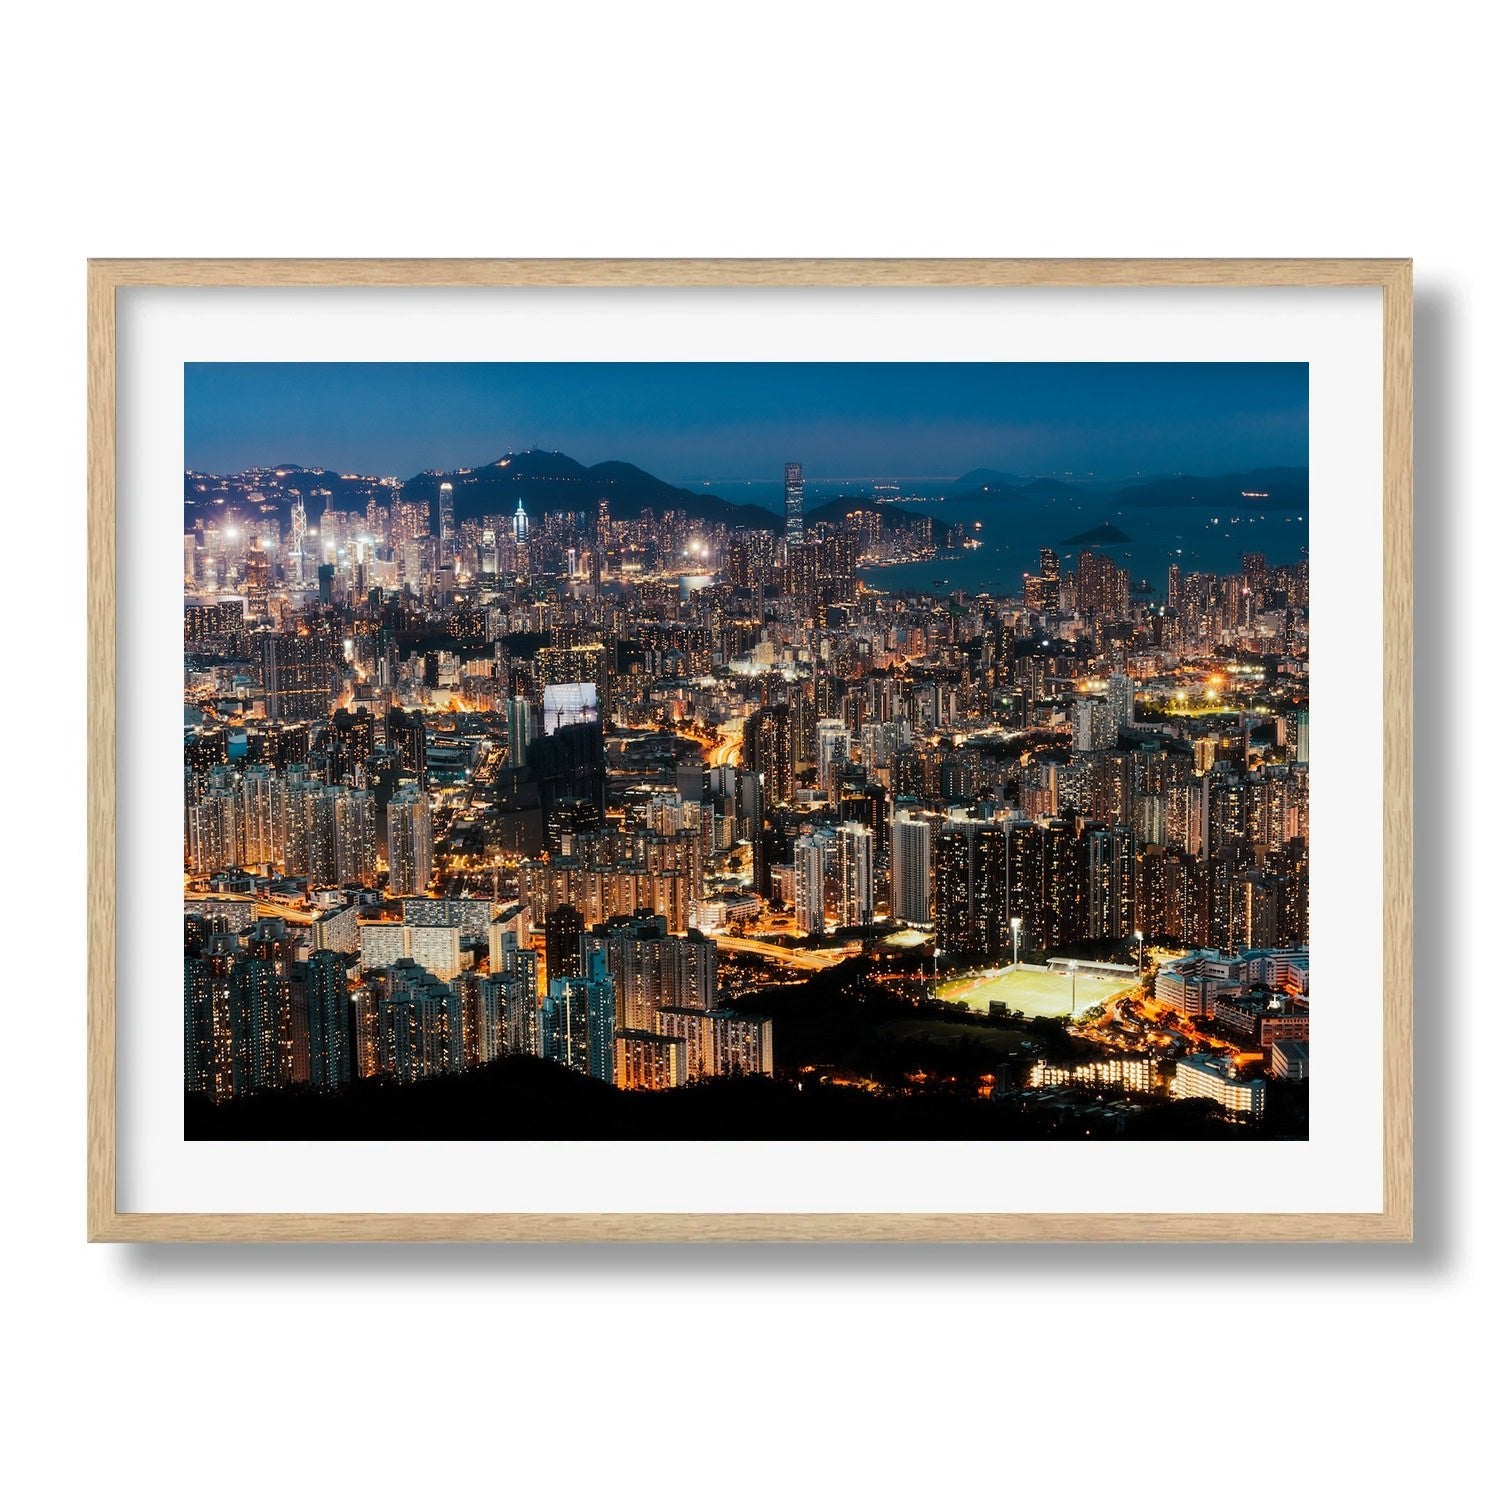 Hong Kong Blue Hour From Kowloon Peak II - Peter Yan Studio